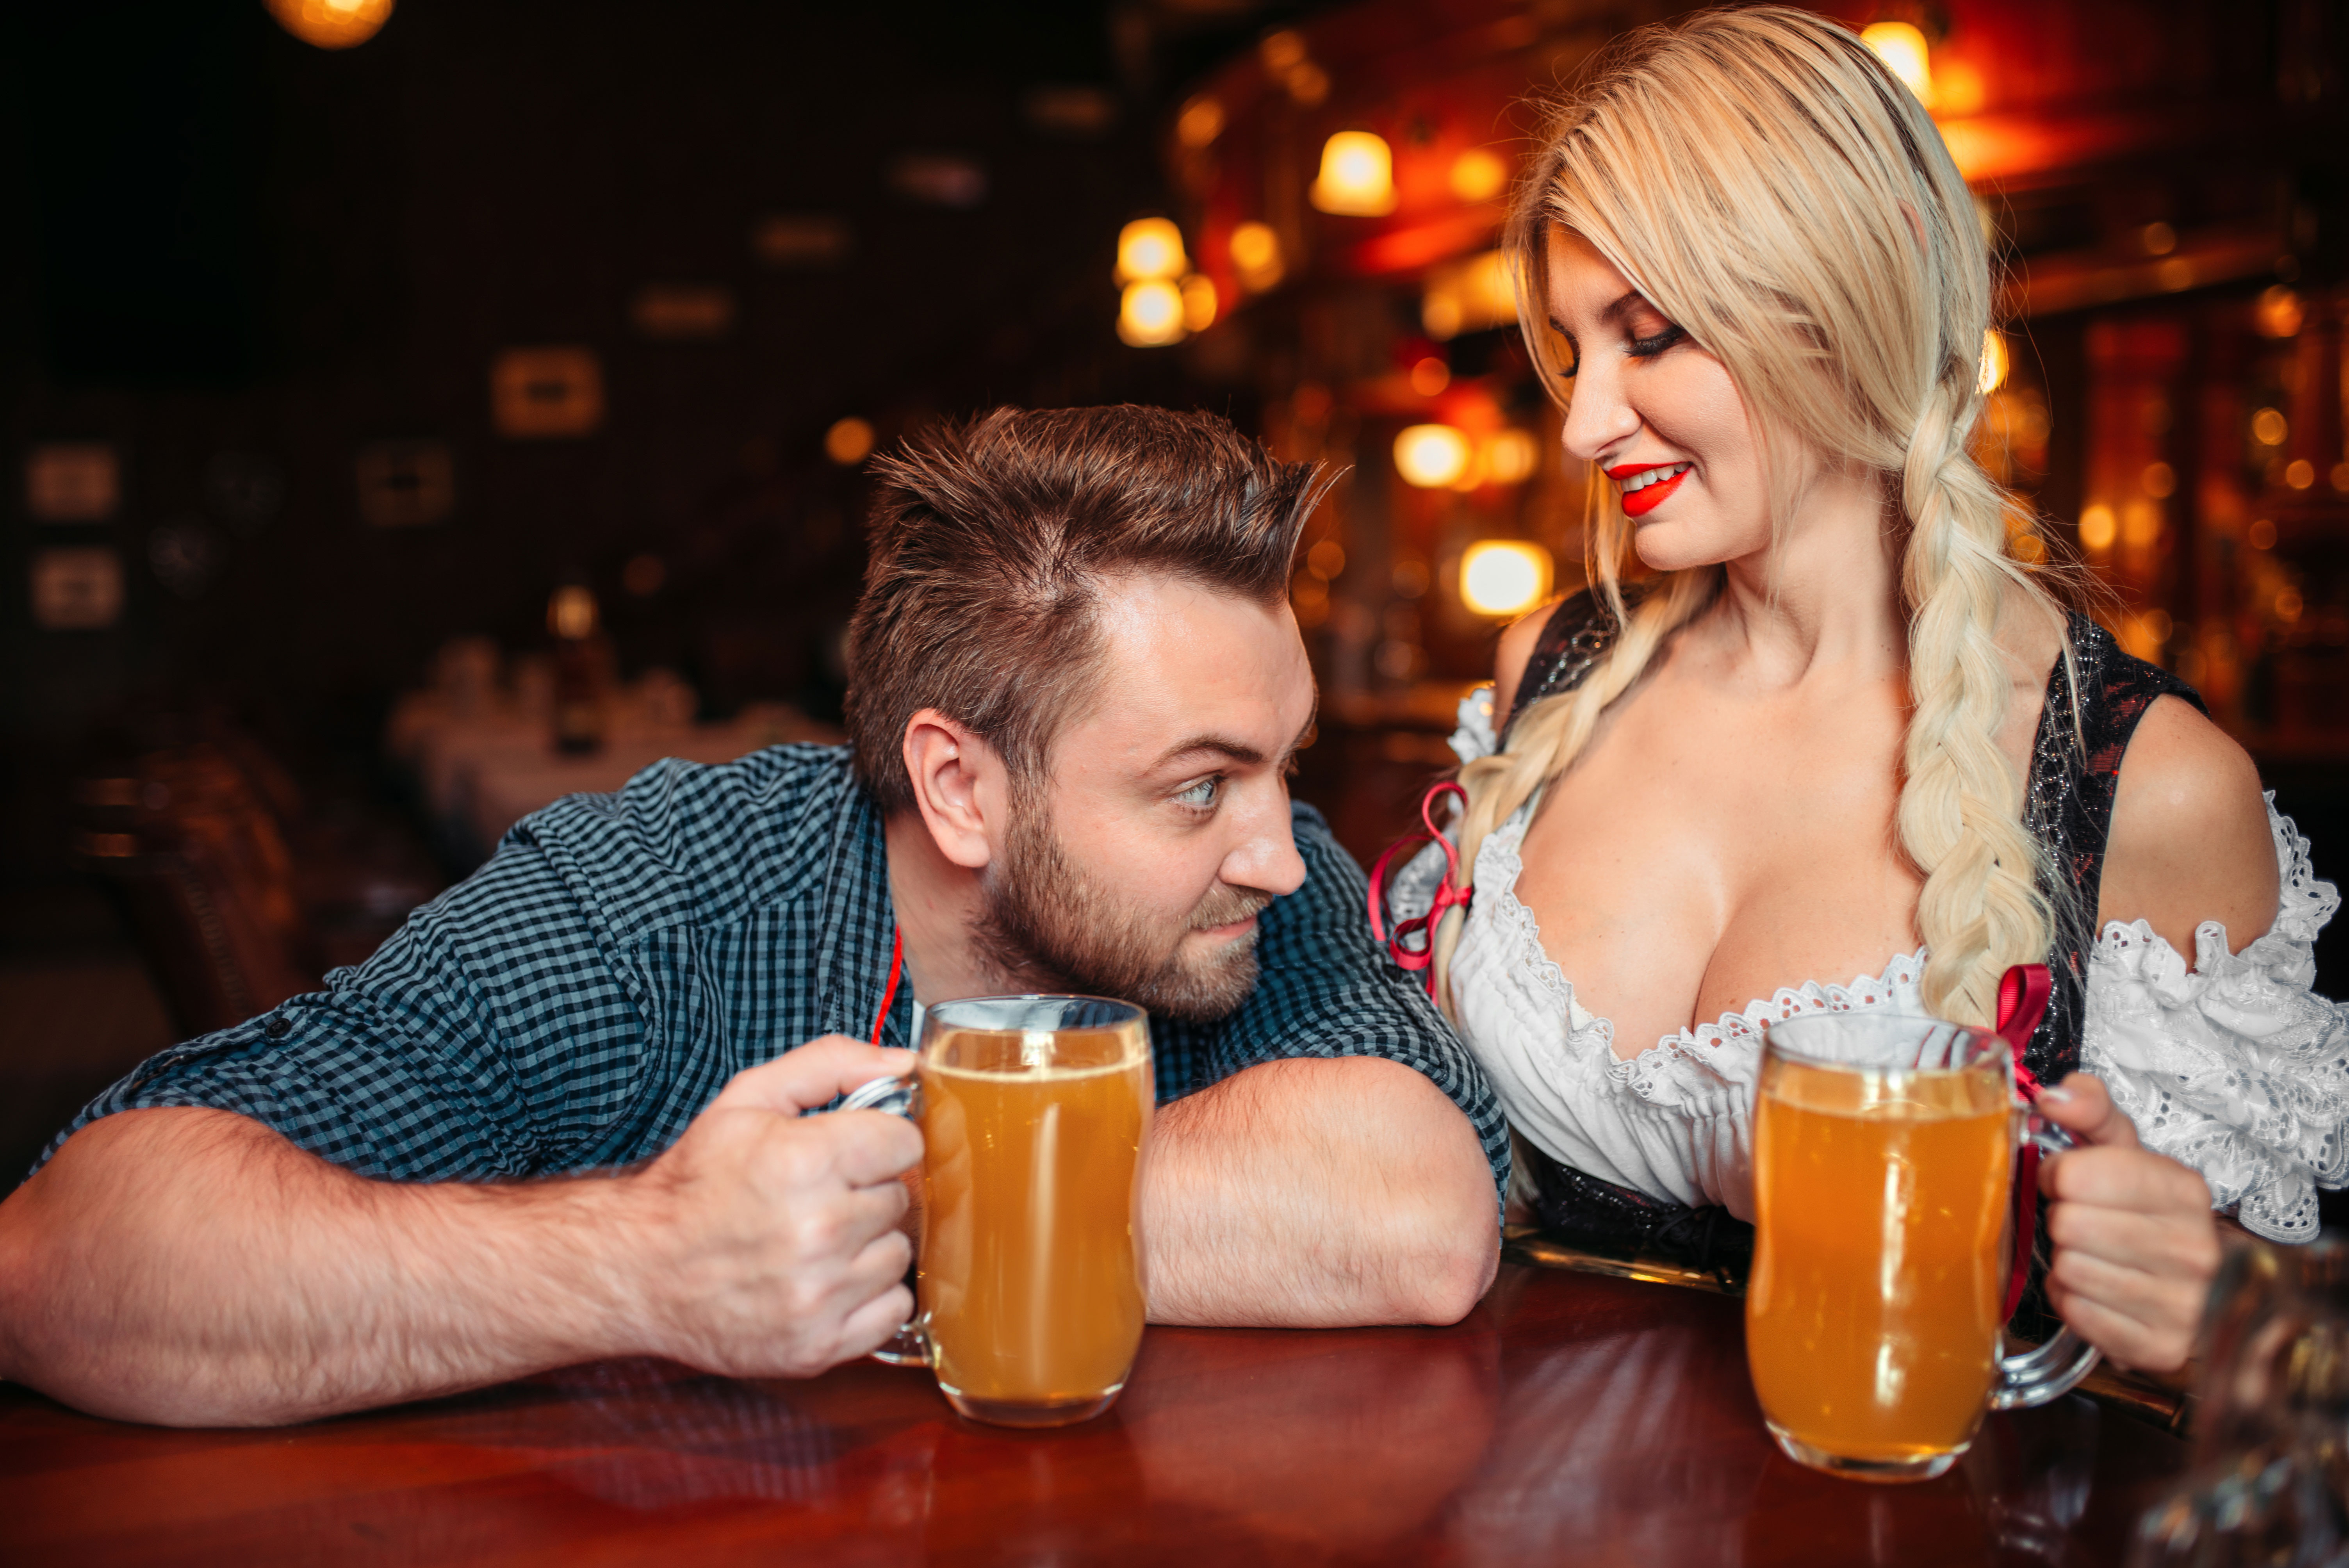 На фото голая официантка подаёт пиво в клубе